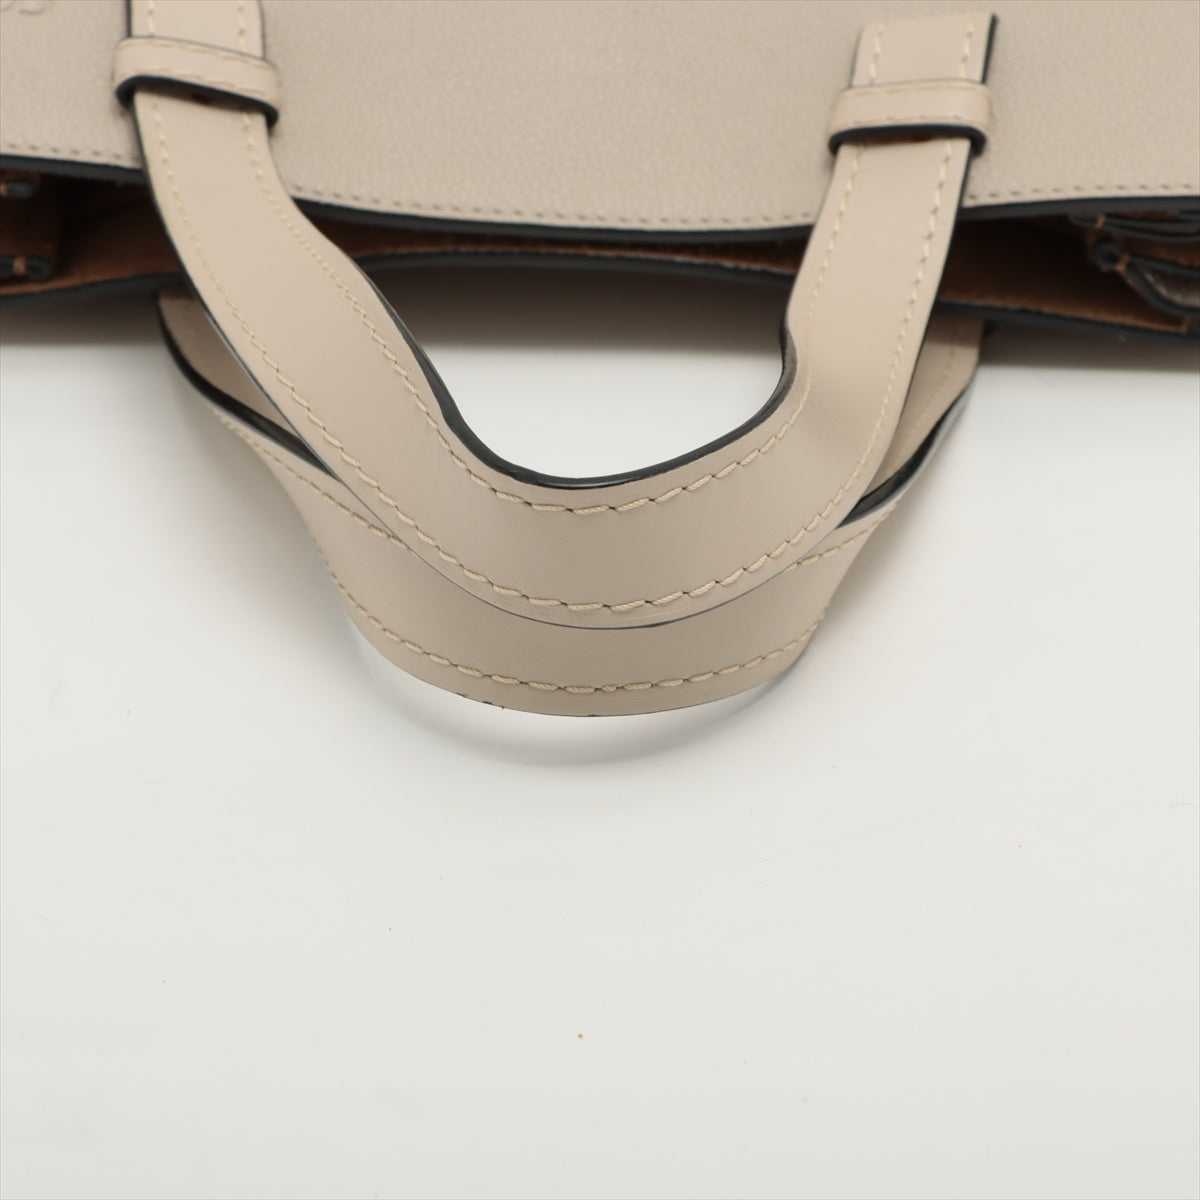 Loewe Gate top handle Leather 2 way tote bag Beige